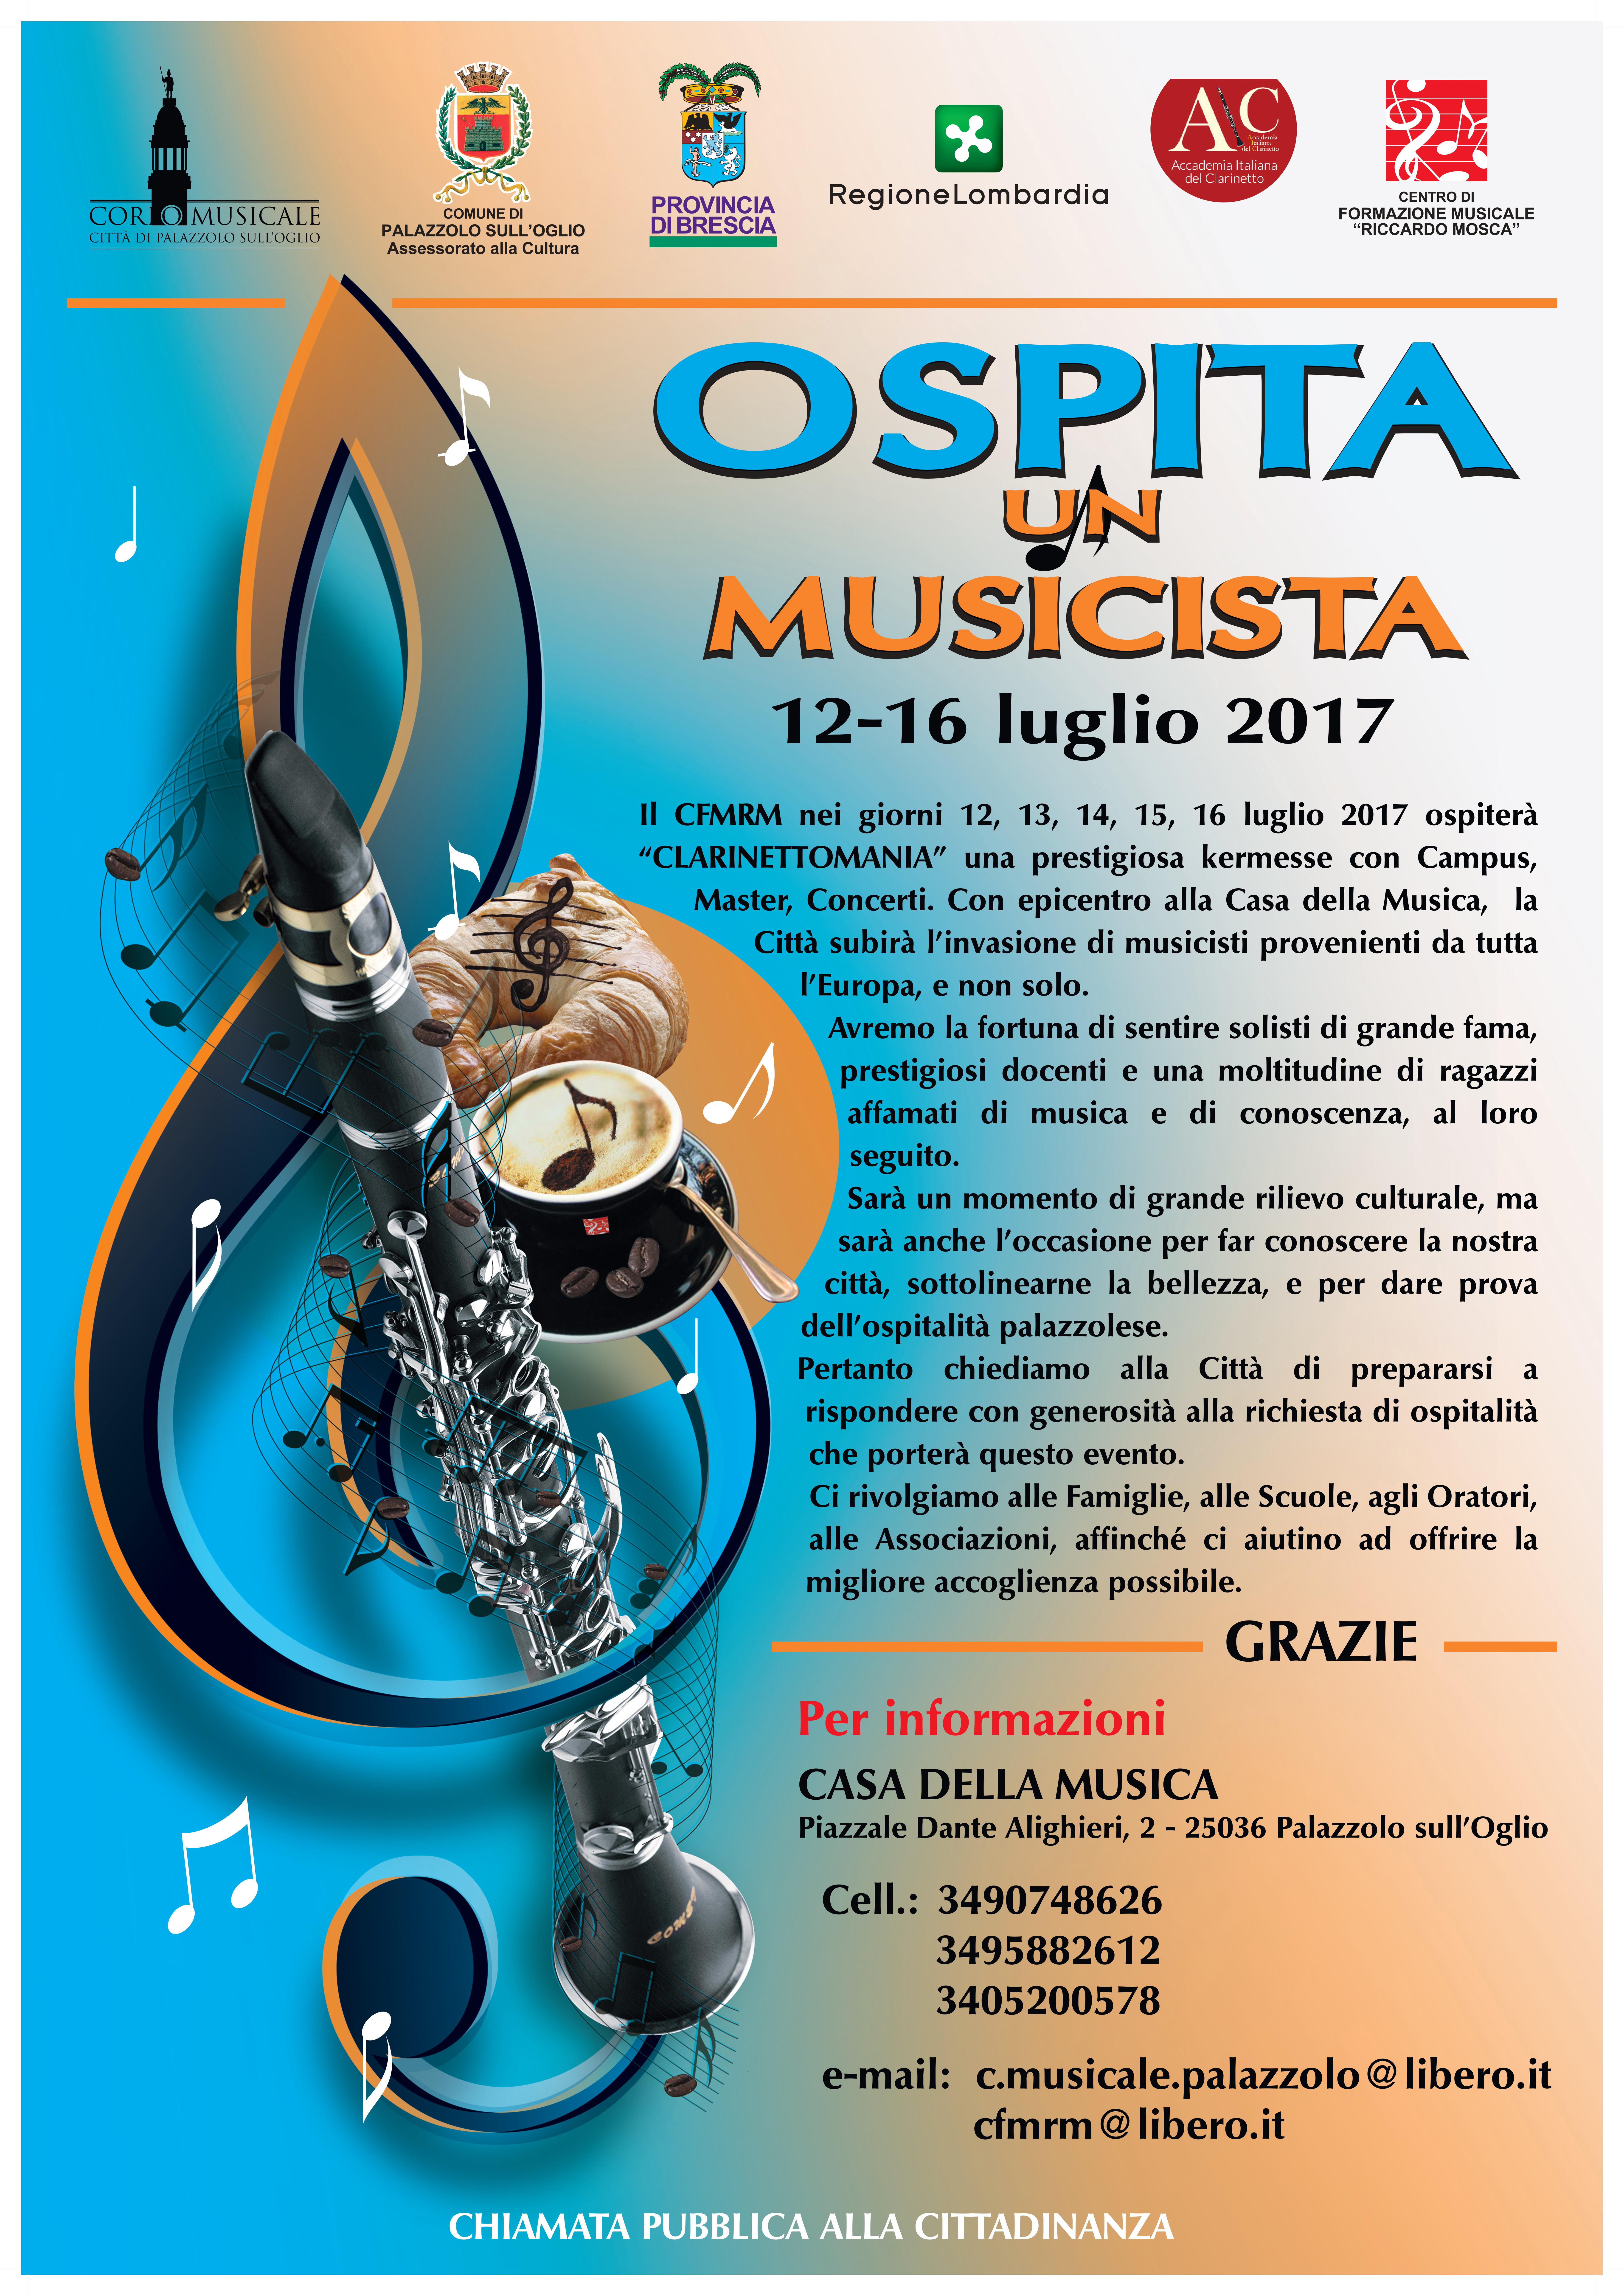 OSPITA UN MUSICISTA! (12-16 Luglio)